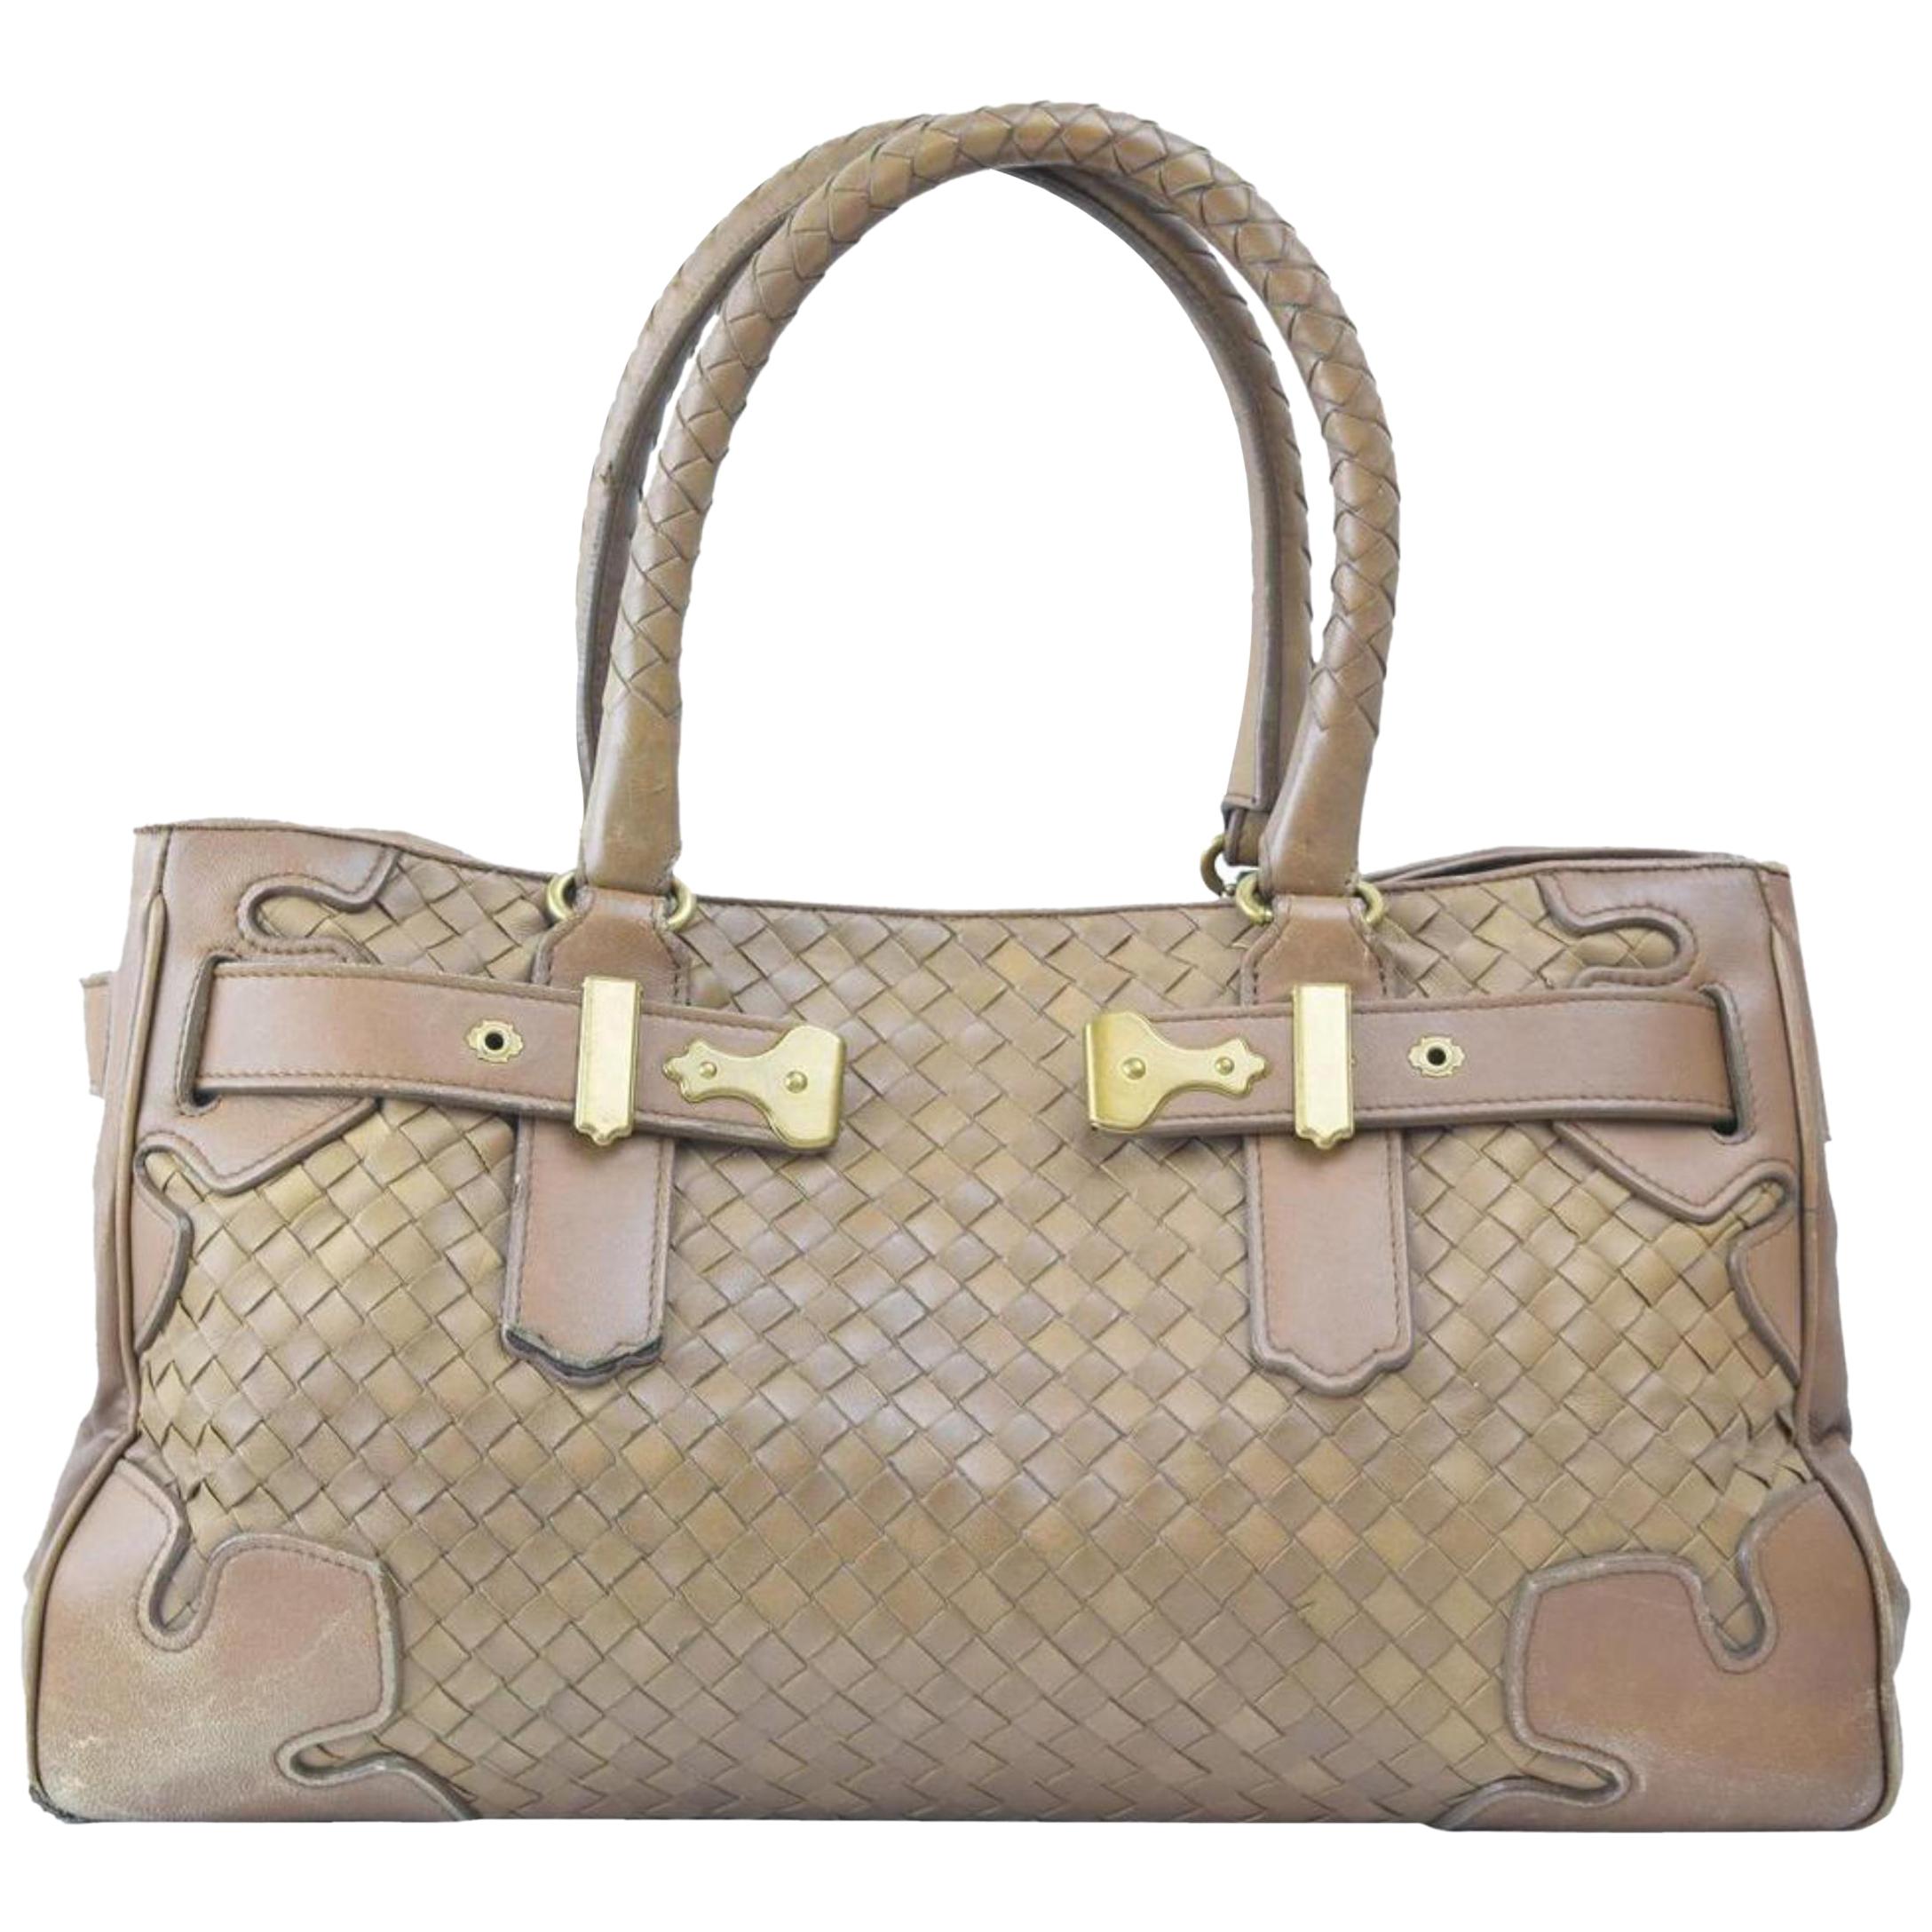 Bottega Veneta Intrecciato Woven Tote 865639 Brown Patent Leather Shoulder Bag For Sale